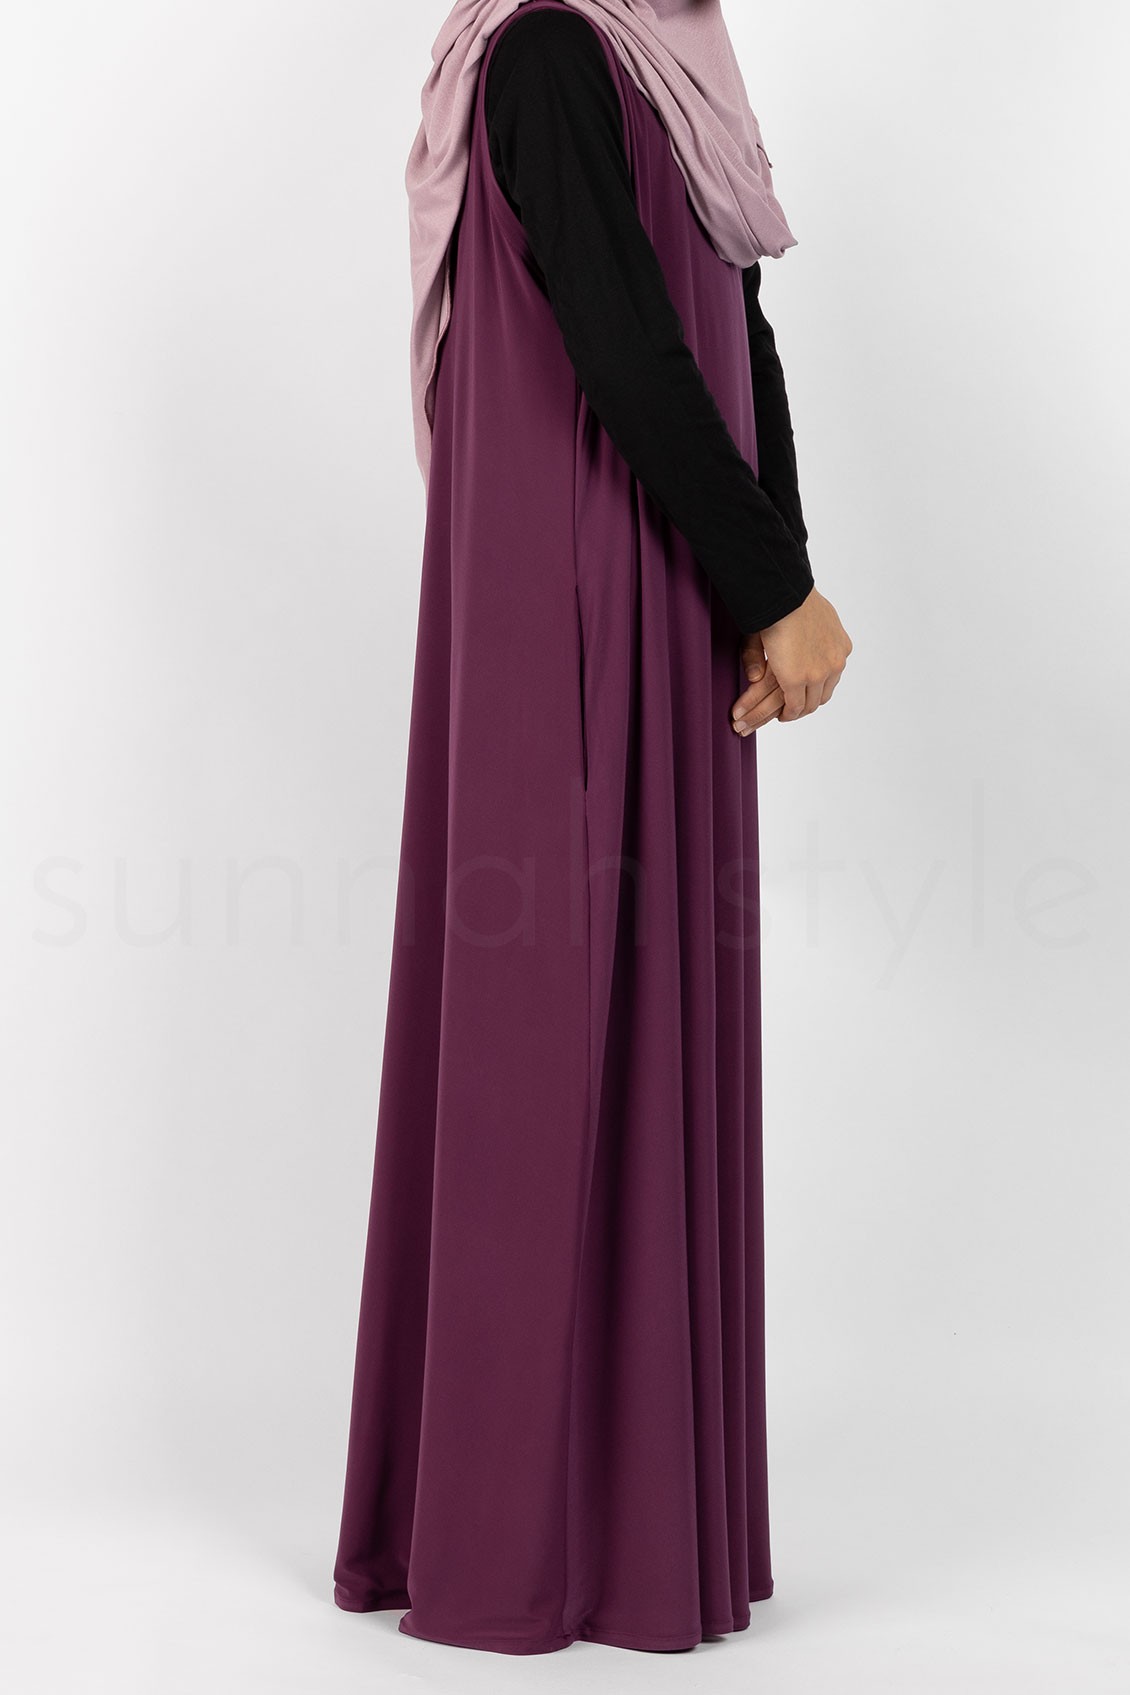 Sunnah Style Girls Sleeveless Jersey Abaya Mulberry